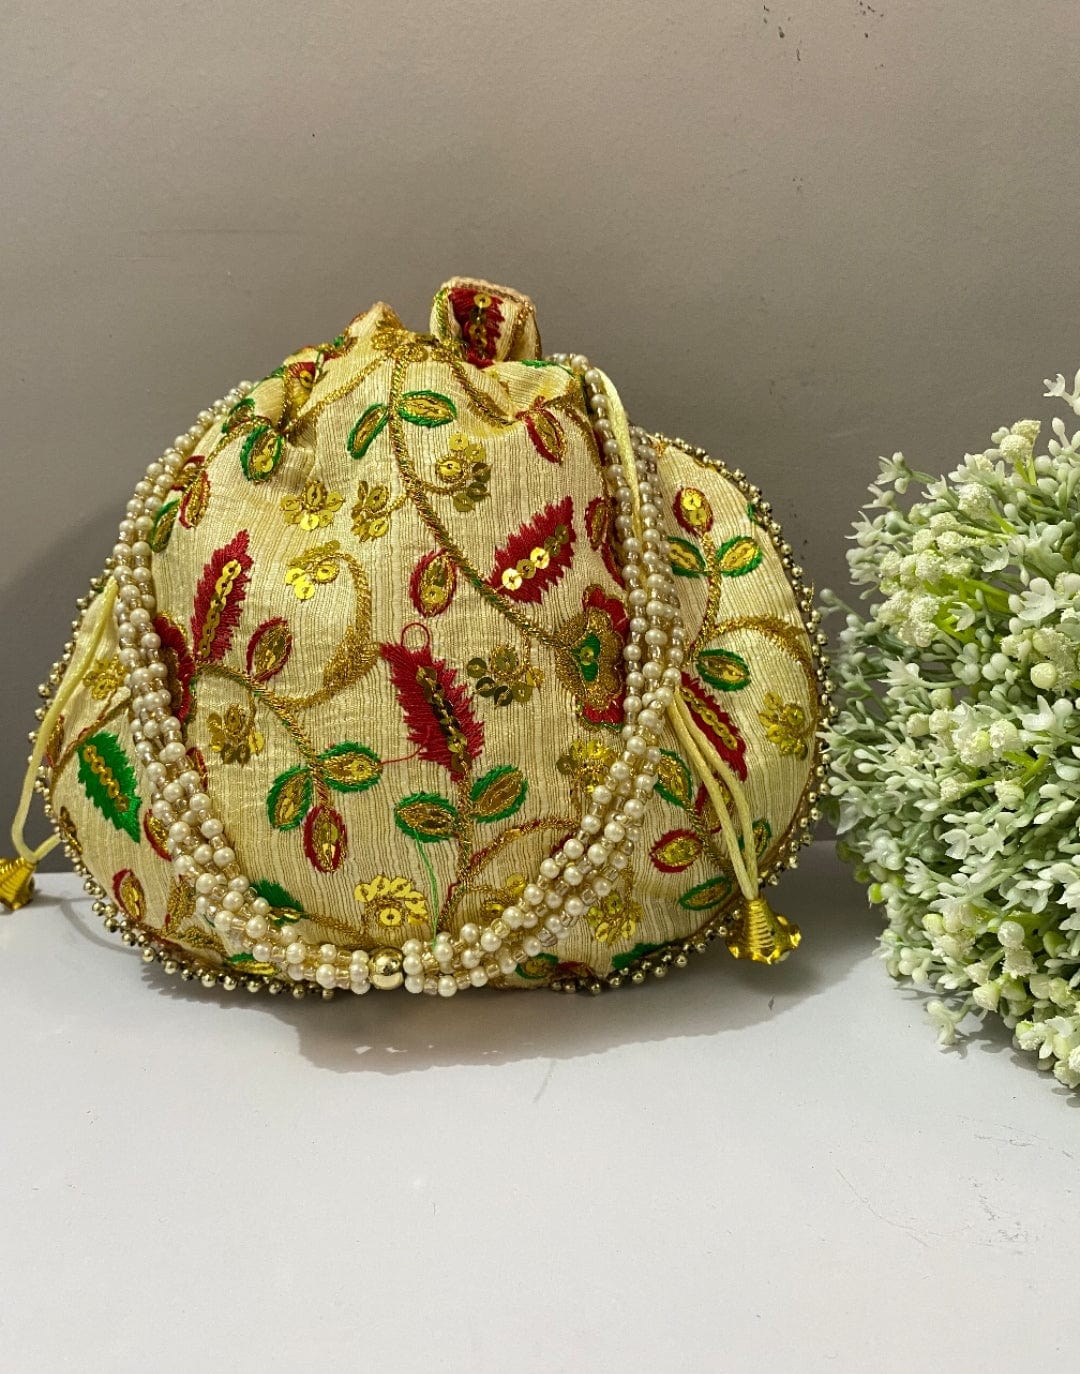 LAMANSH ® Women's Potli Bag LAMANSH® Golden Sequin Ethnic Potli Bag Handbag